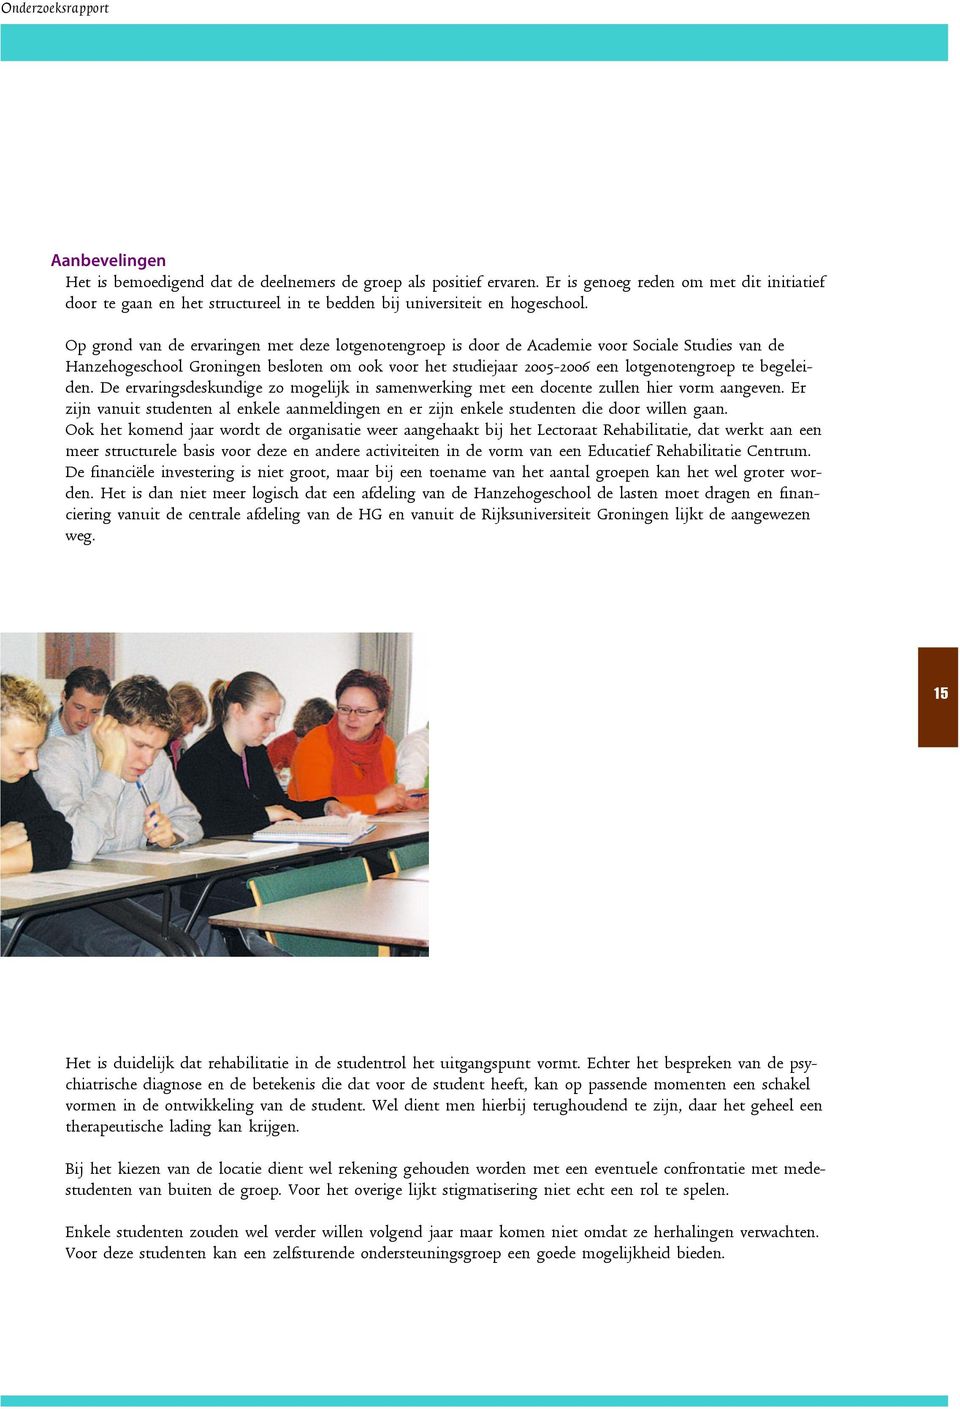 Op grond van de ervaringen met deze lotgenotengroep is door de Academie voor Sociale Studies van de Hanzehogeschool Groningen besloten om ook voor het studiejaar 2005-2006 een lotgenotengroep te